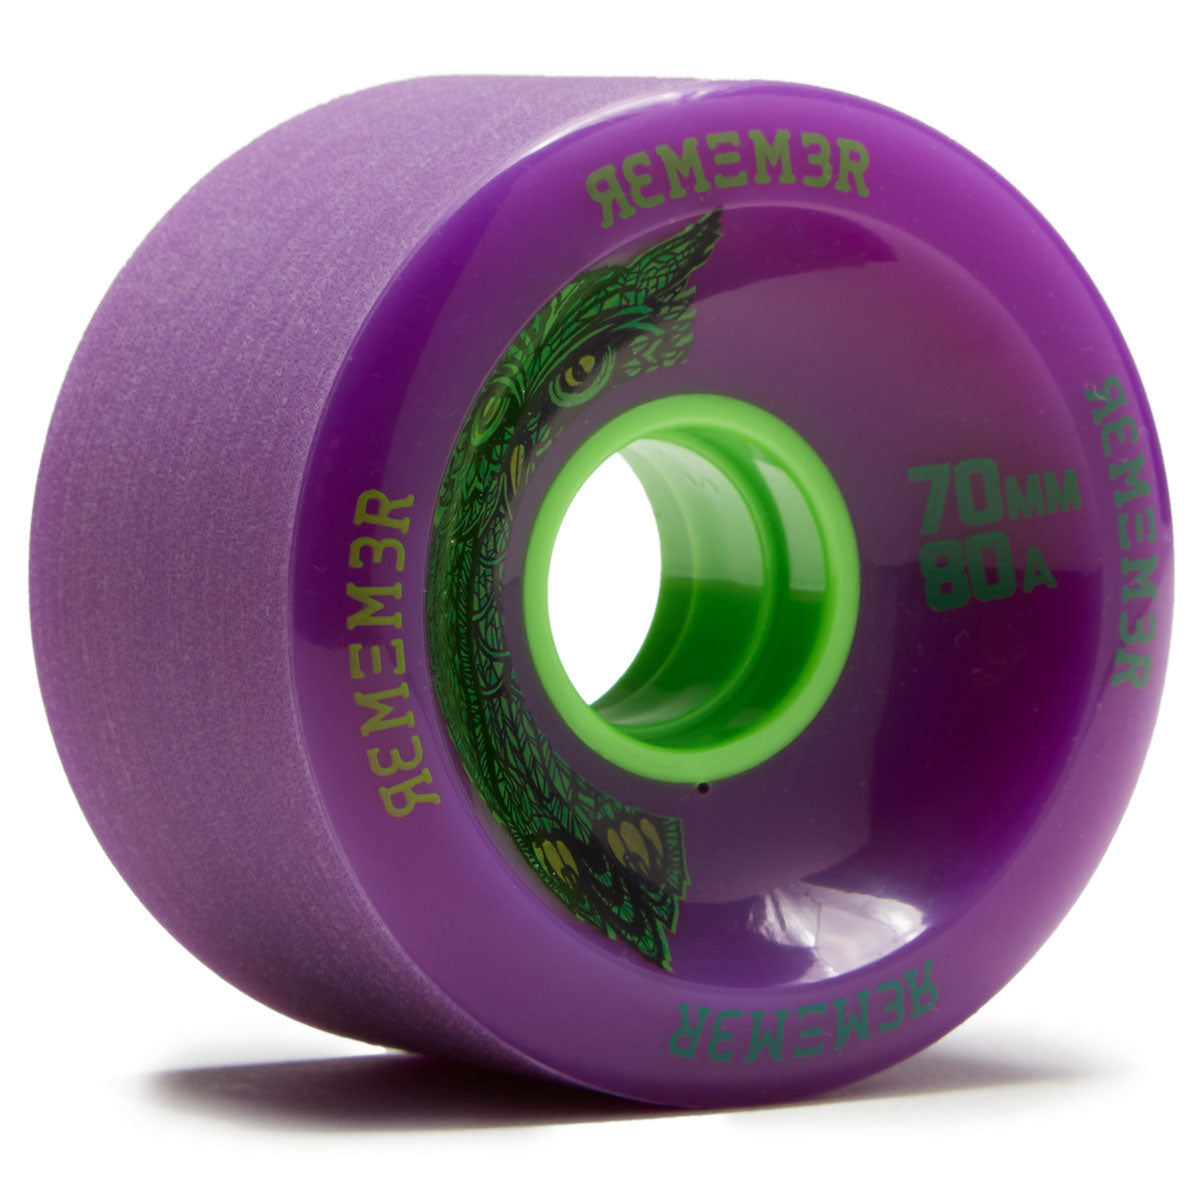 Remember Hoot Slide 80a Longboard Wheels - Purple - 70mm image 1